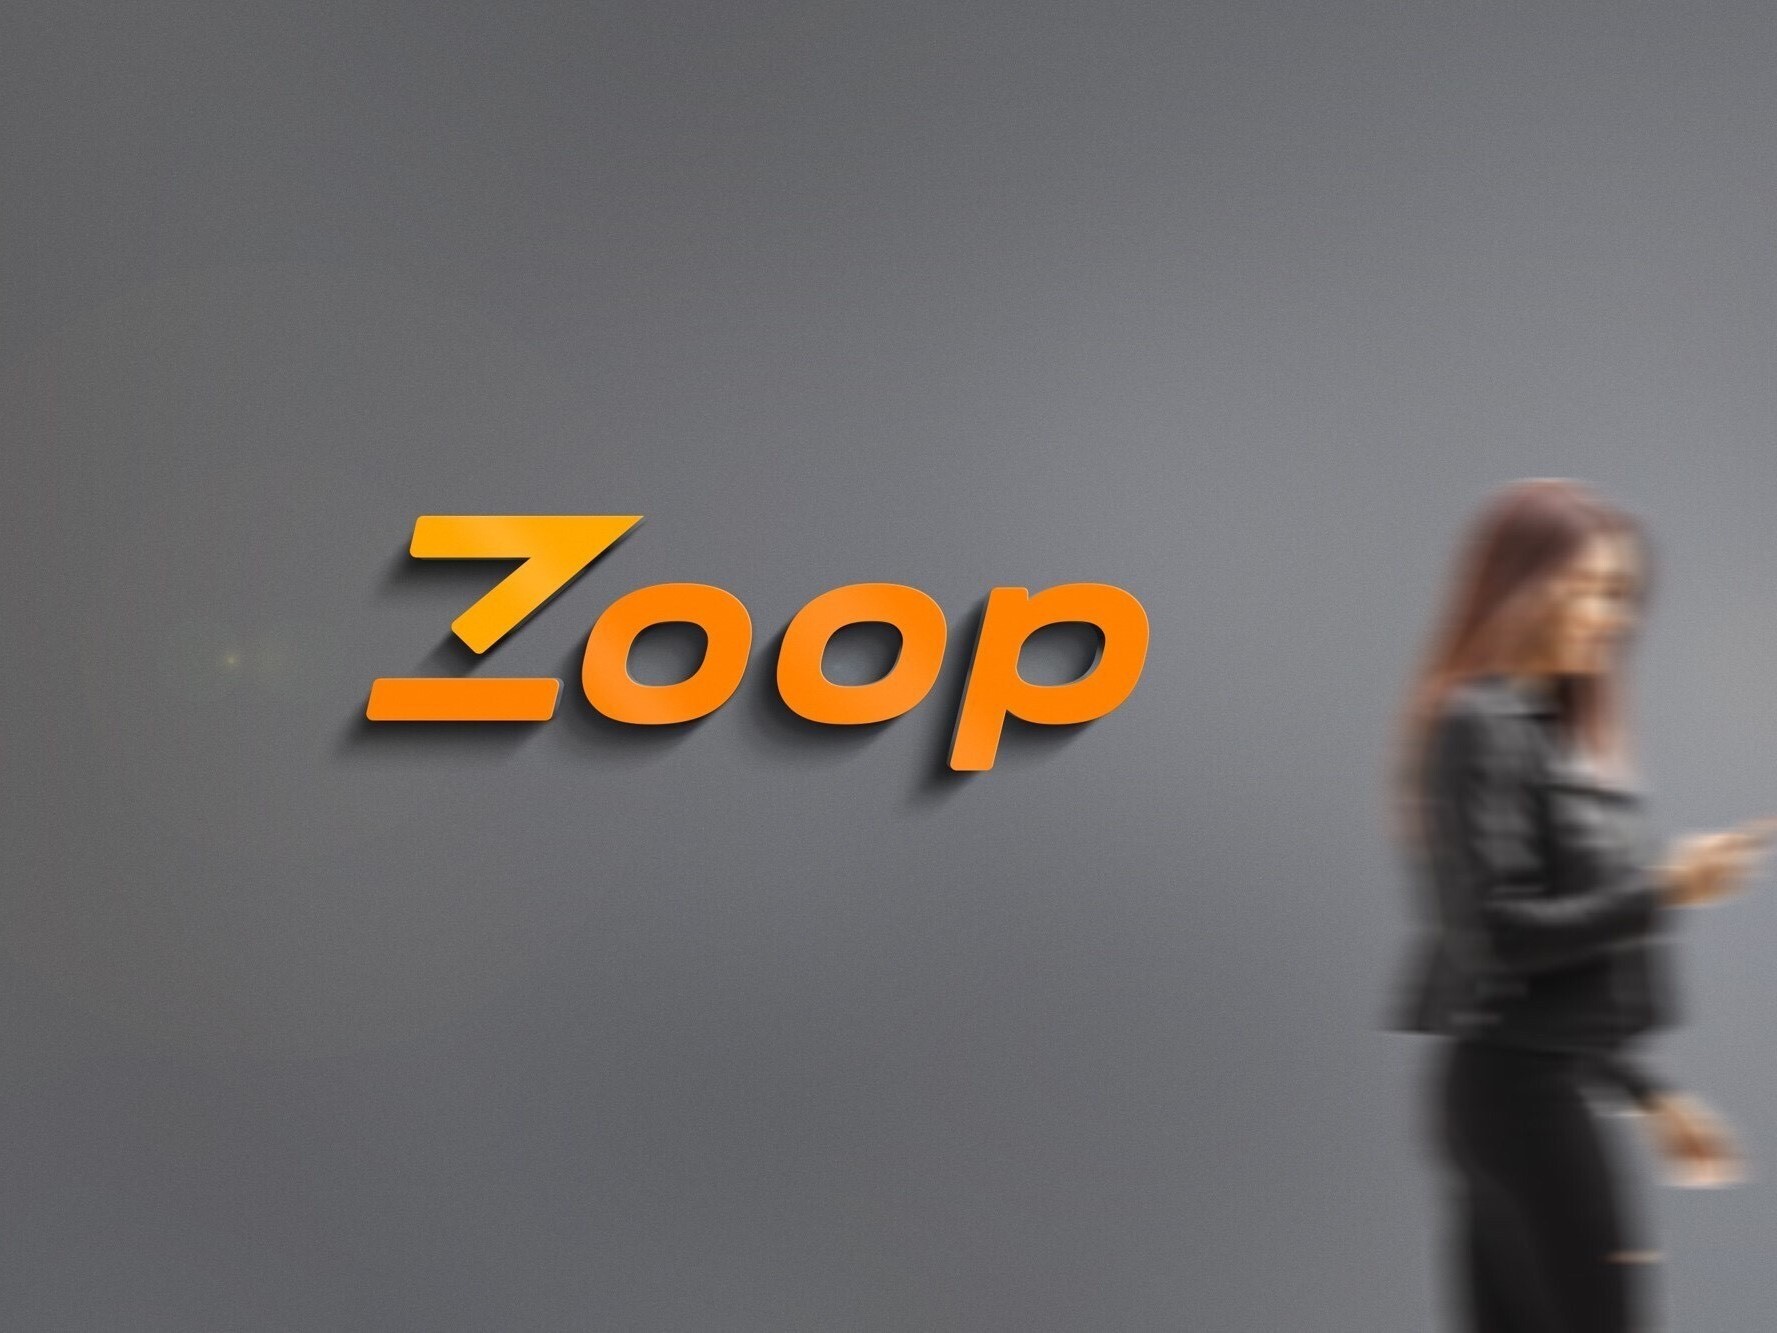 De março a julho deste ano, a Zoop informou um crescimento de 140% no volume financeiro mensal transacionado dentro da plataforma e ganhou cerca de 40 novos clientes durante a pandemia